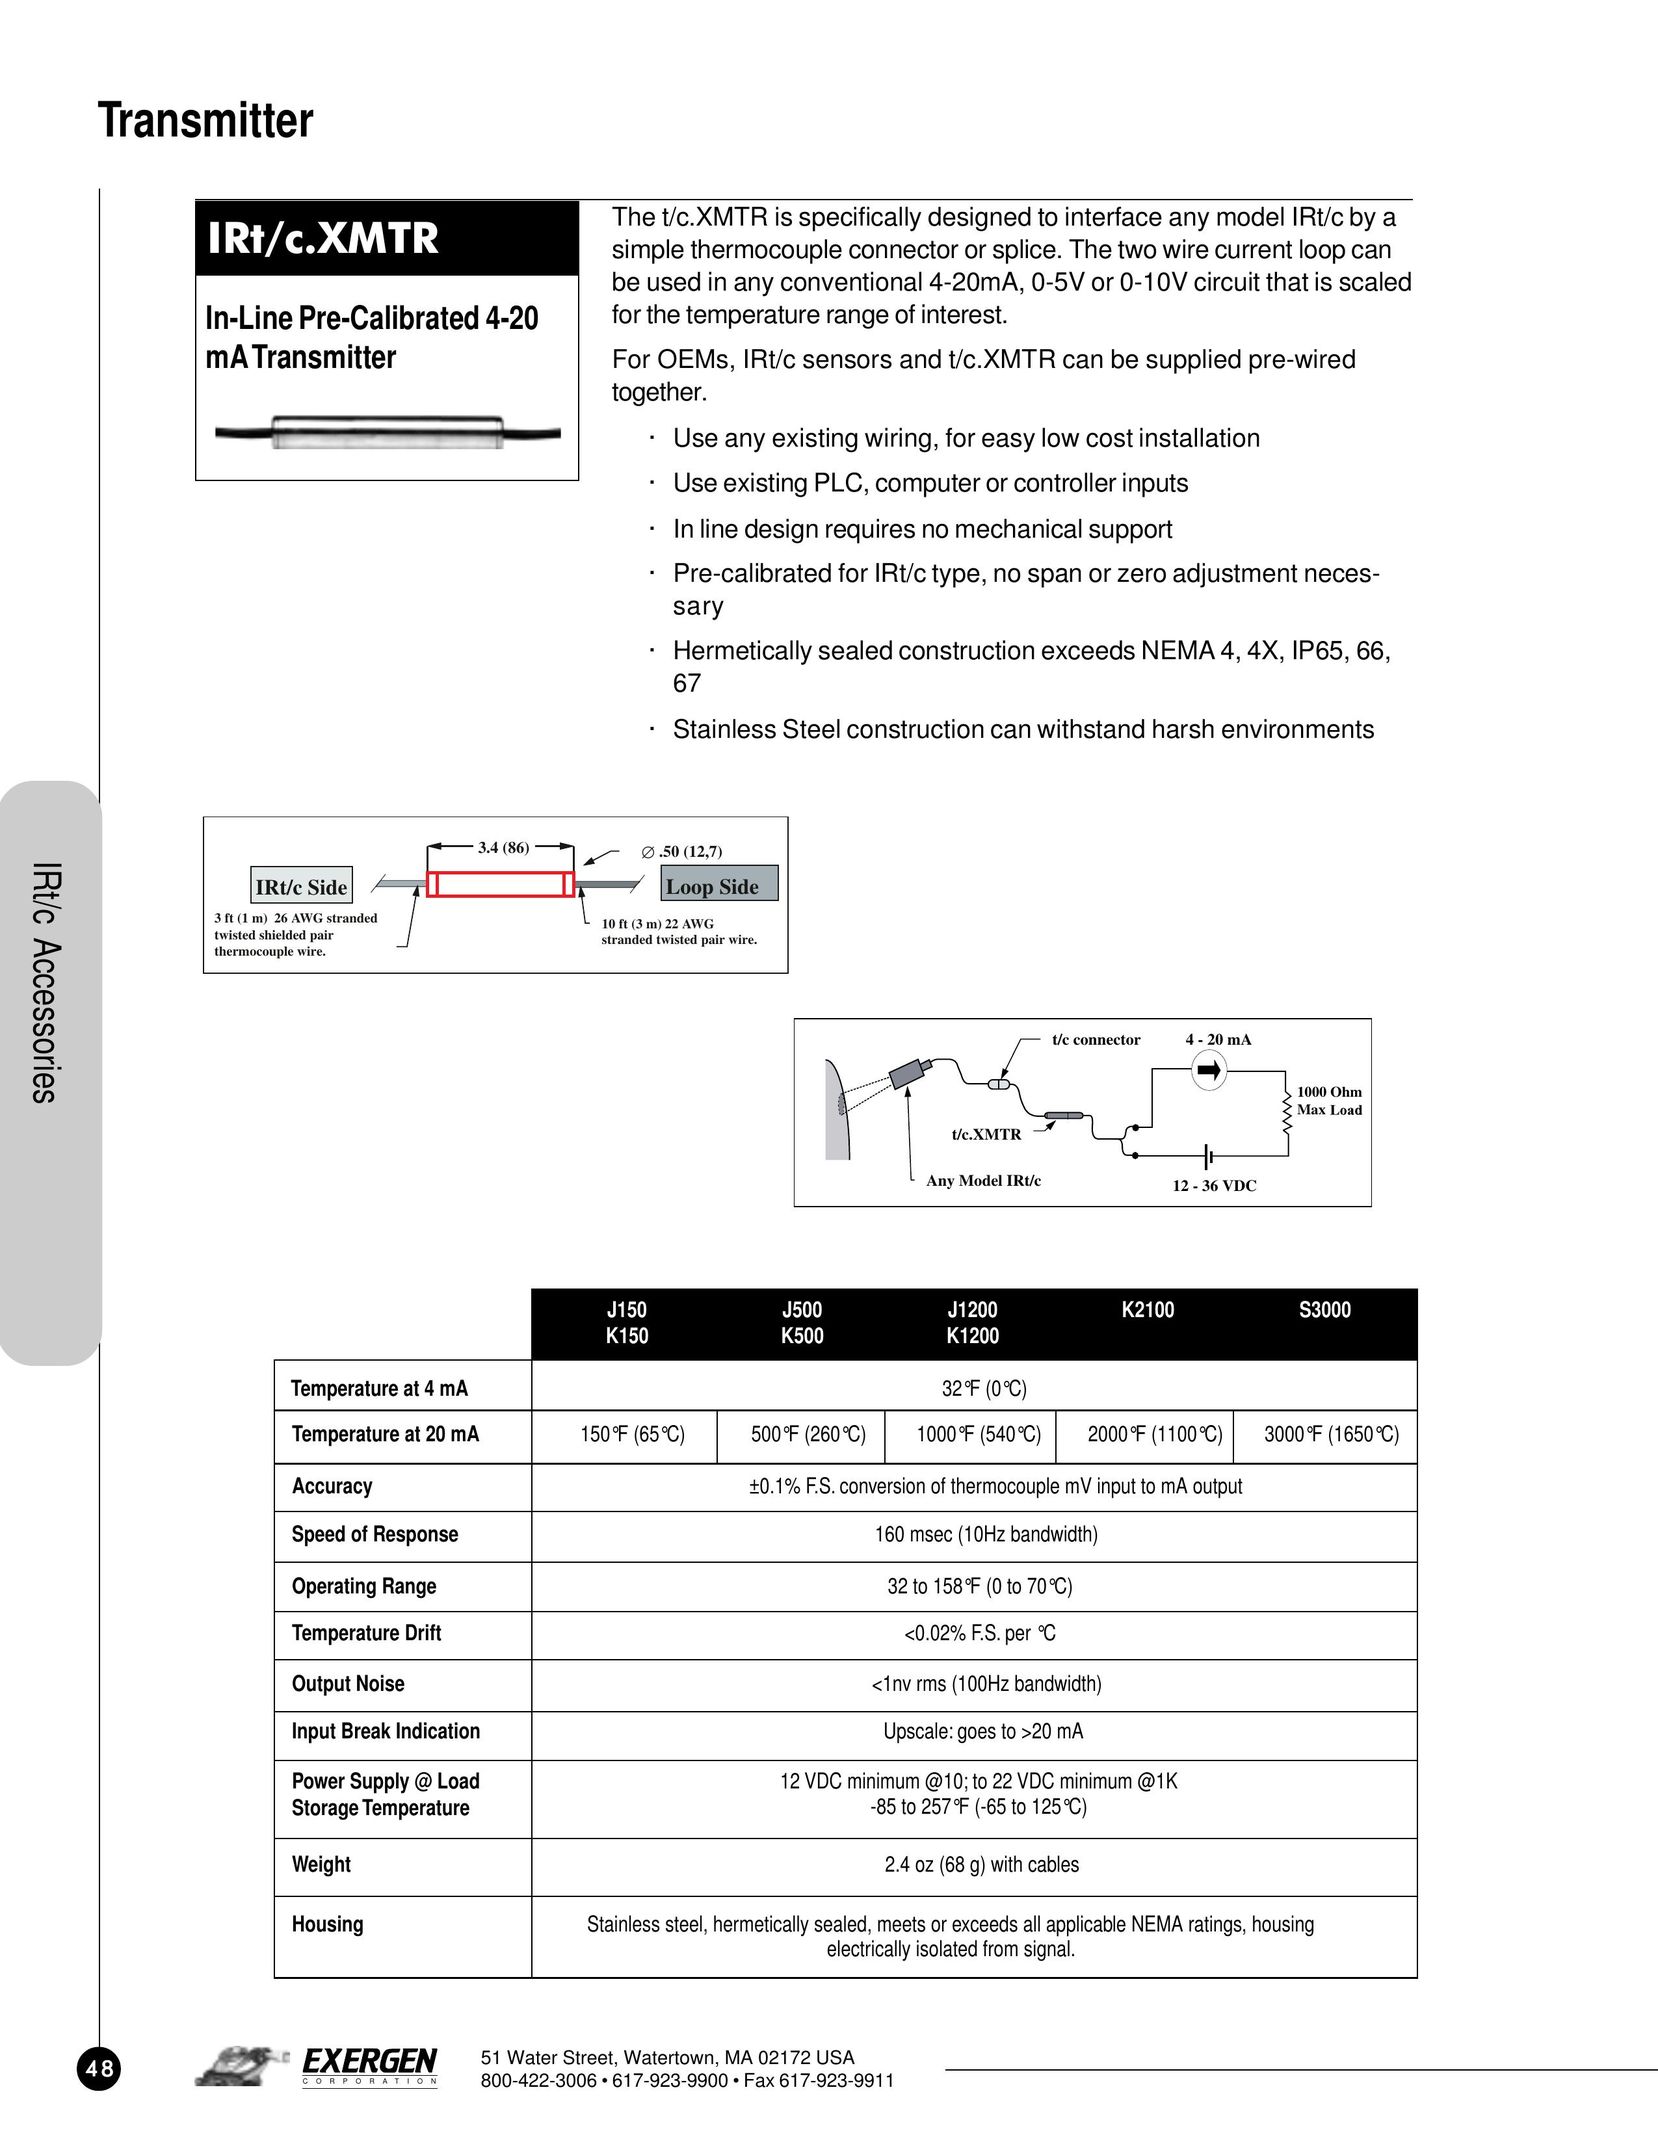 Exergen IRt/c.XMTR Network Card User Manual